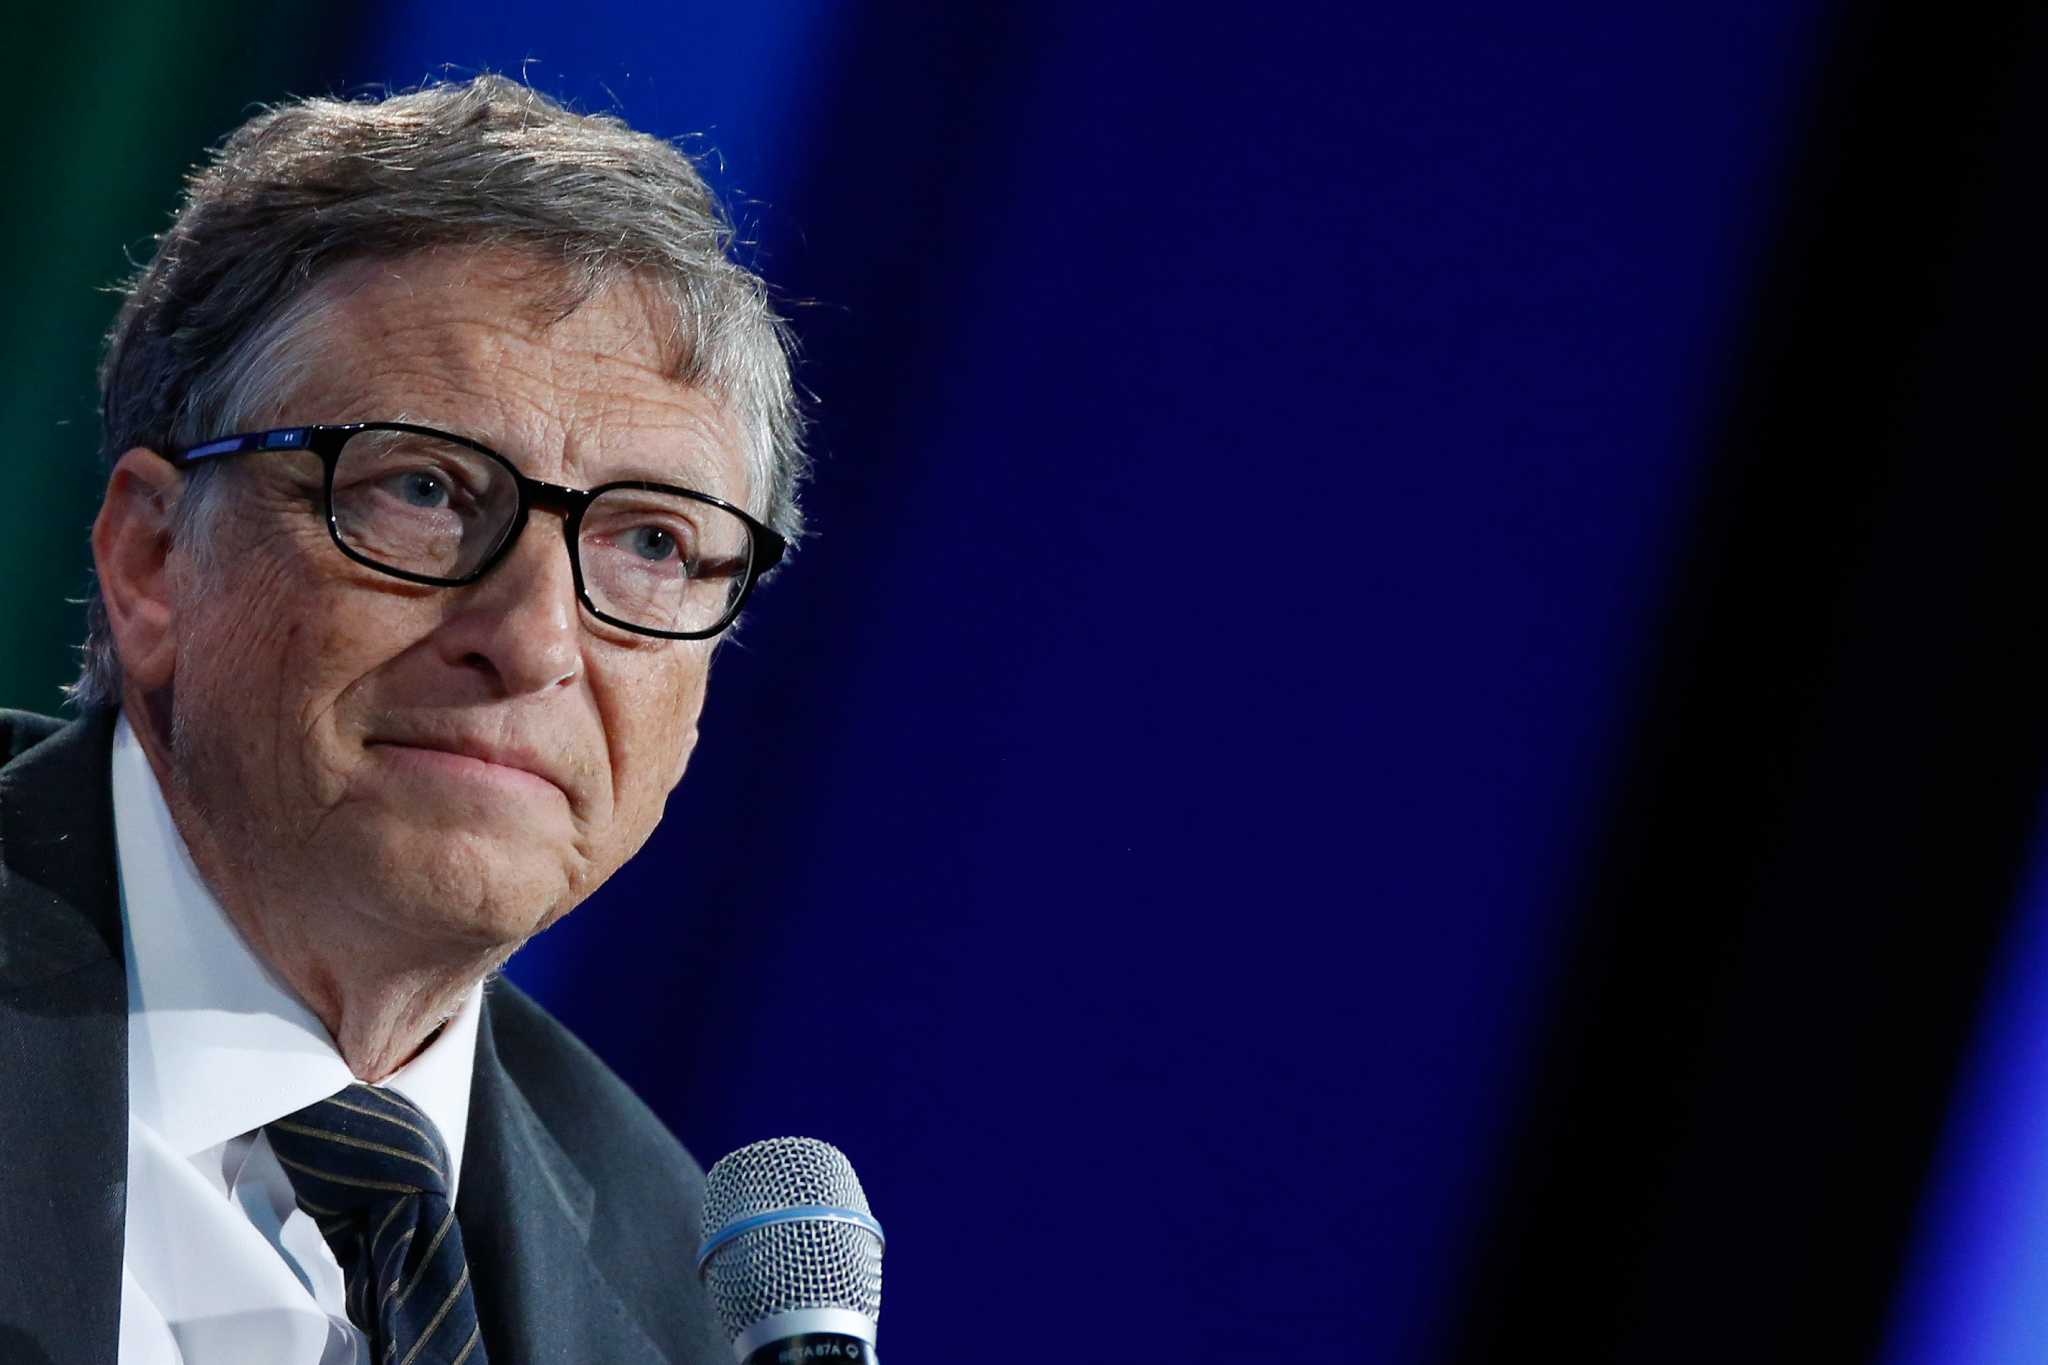 SimoneNuts: Bill Gates has PC